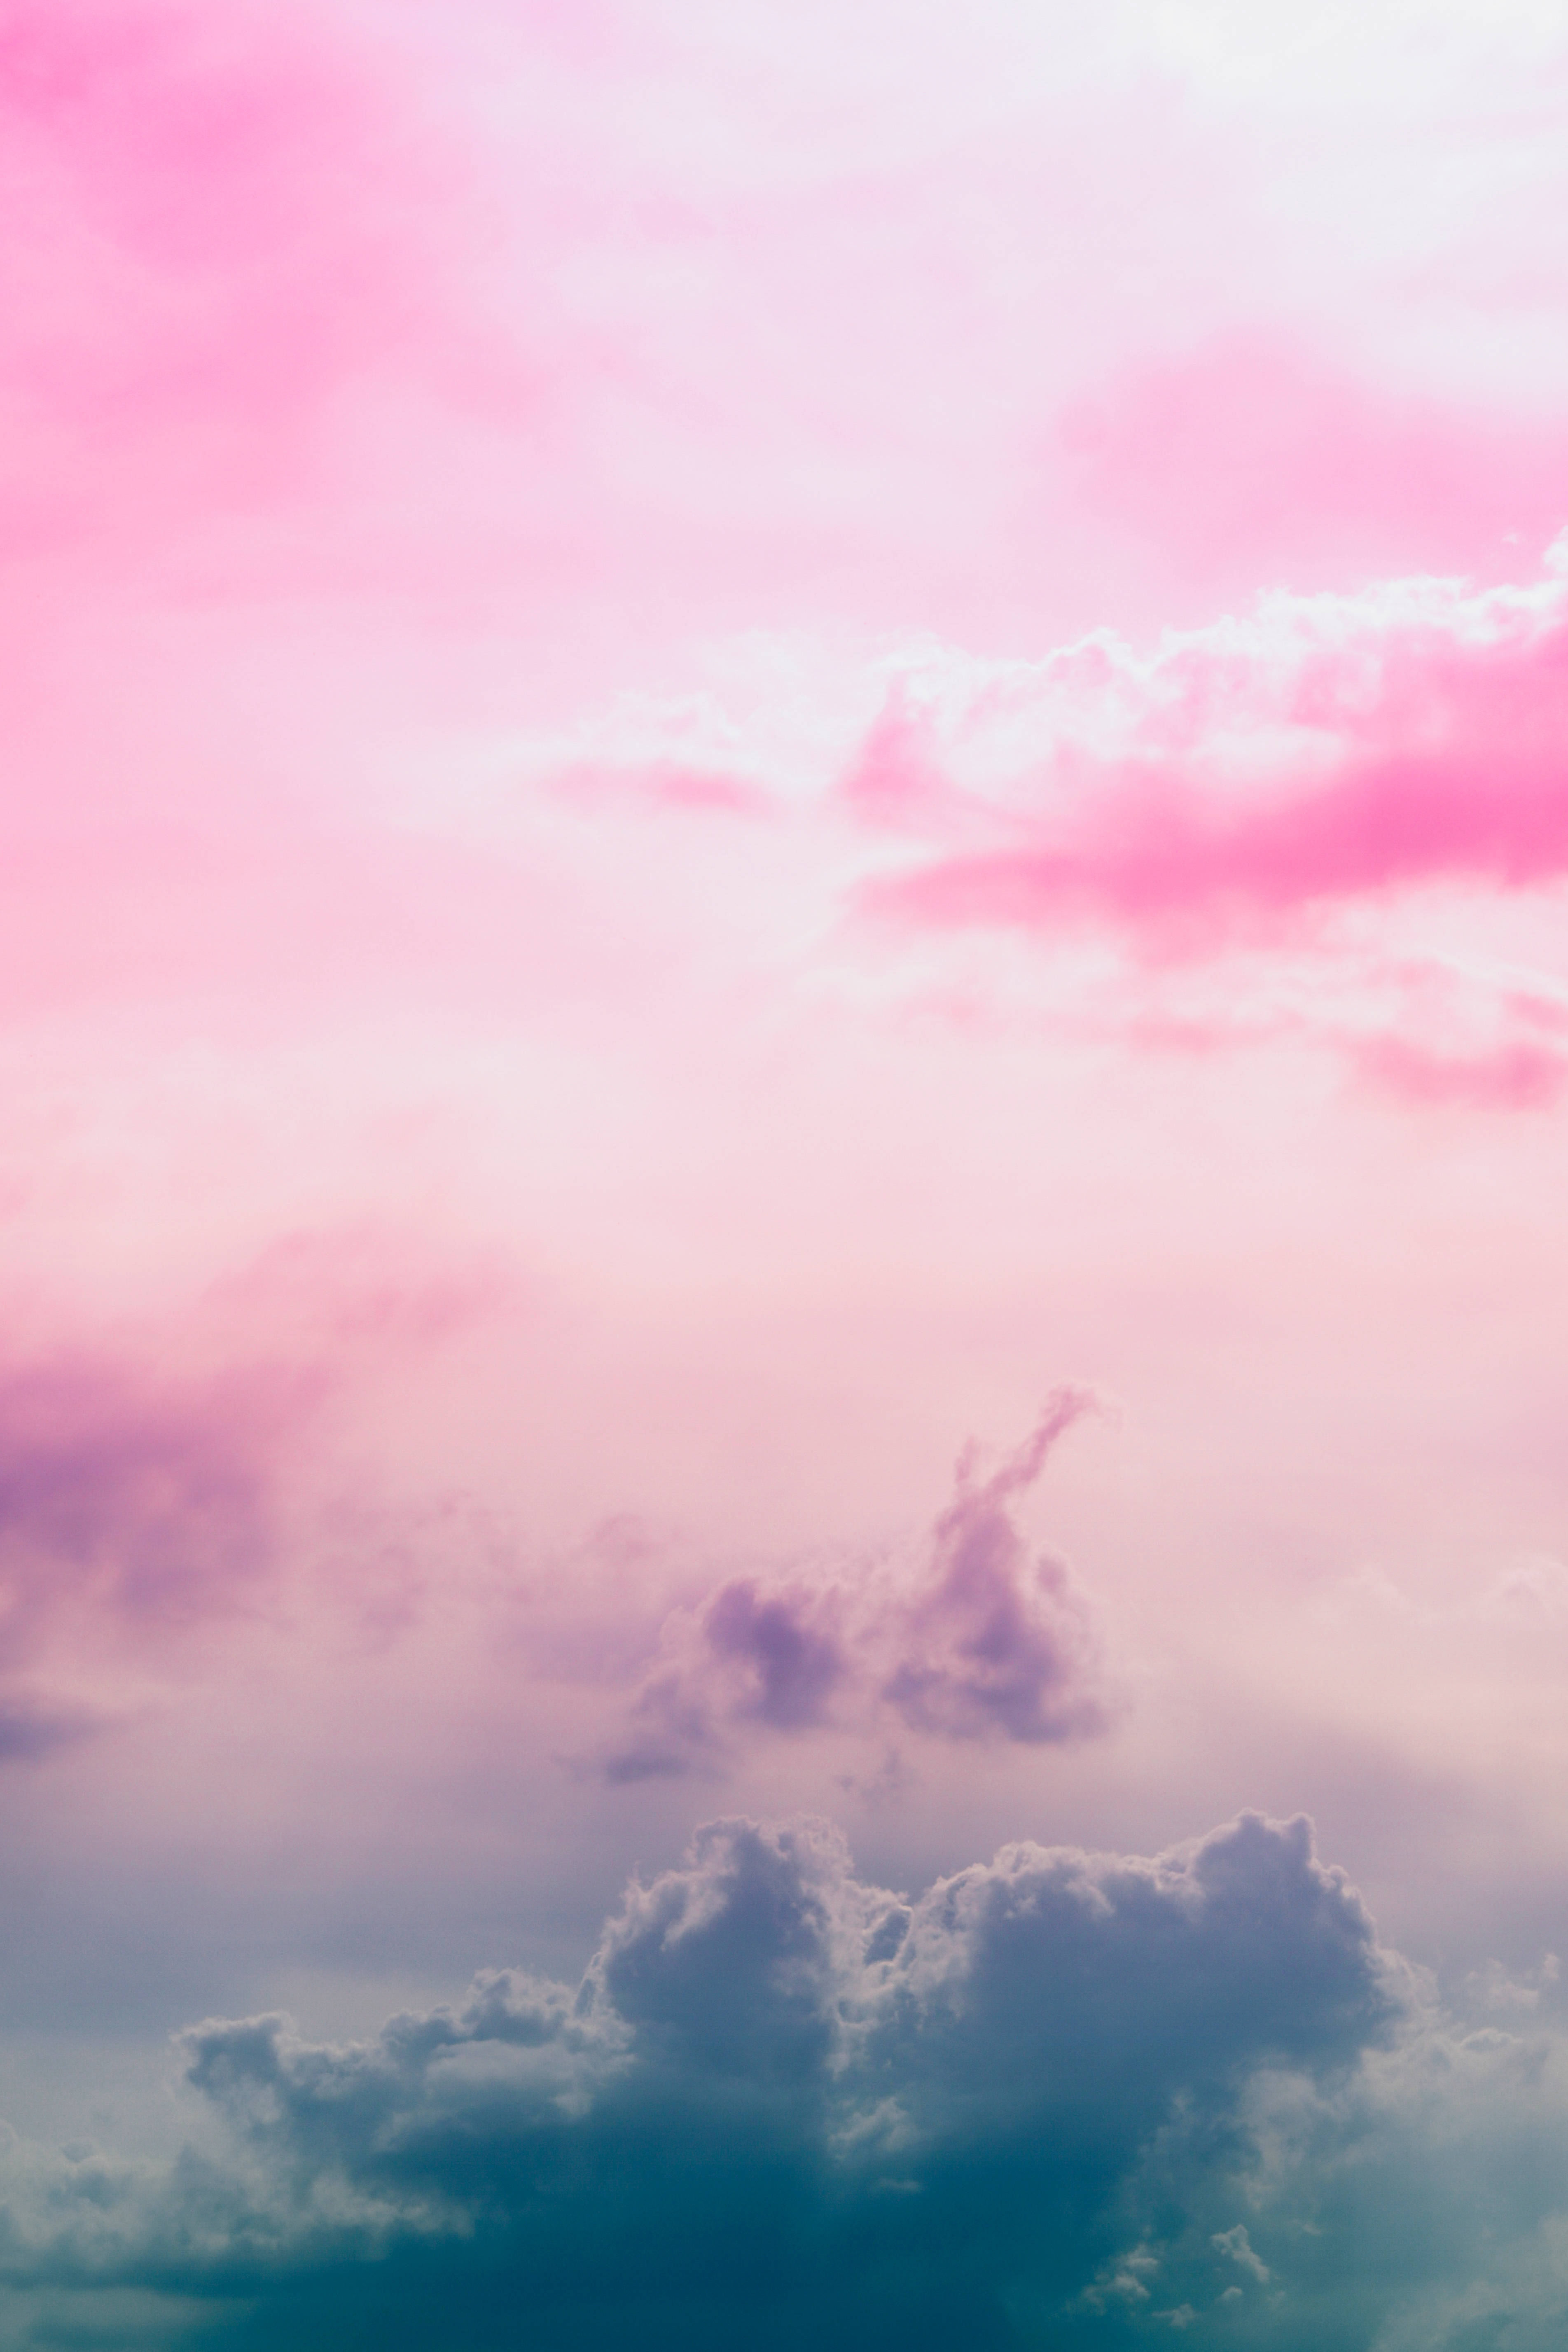 эстетичное небо с розовым и бирюзовым градиентом